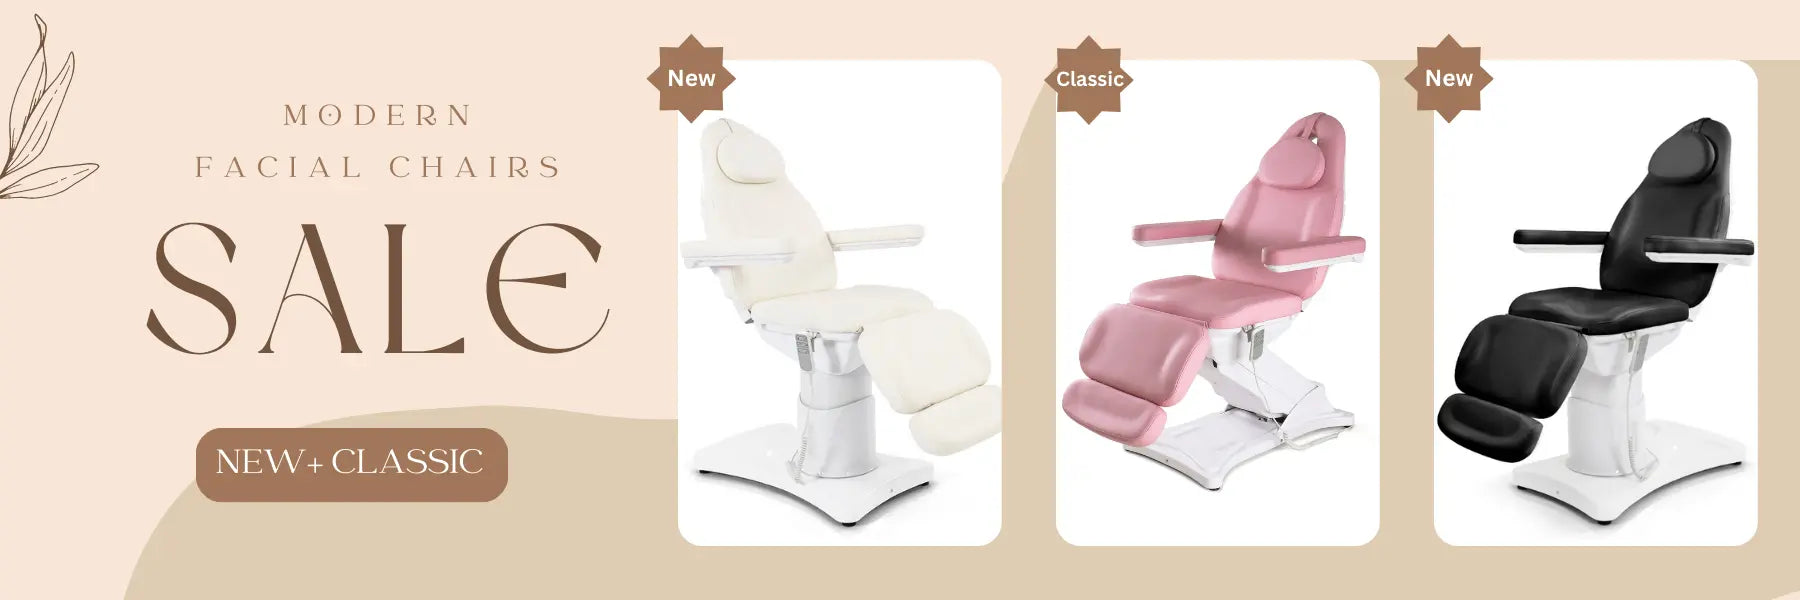 beautyace salon furniture moder facial chair for sale